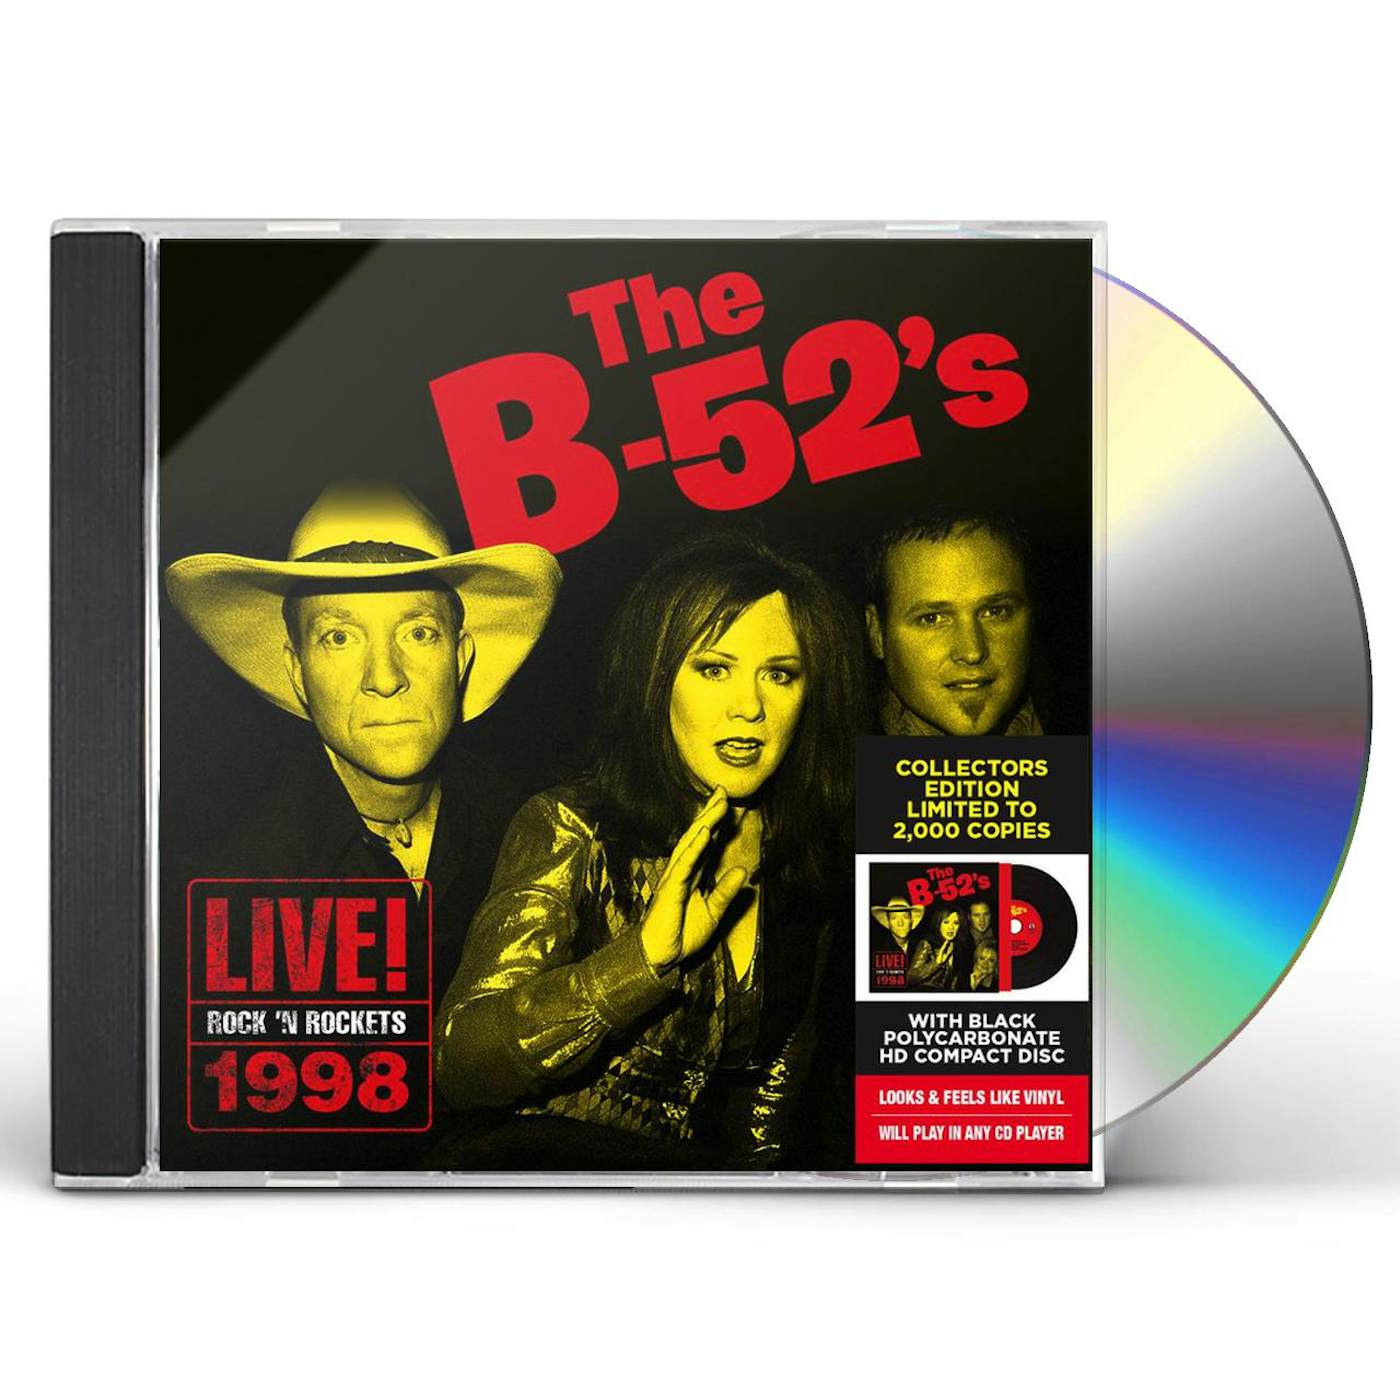 The B-52's LIVE ROCK 'N ROCKETS 1998 CD